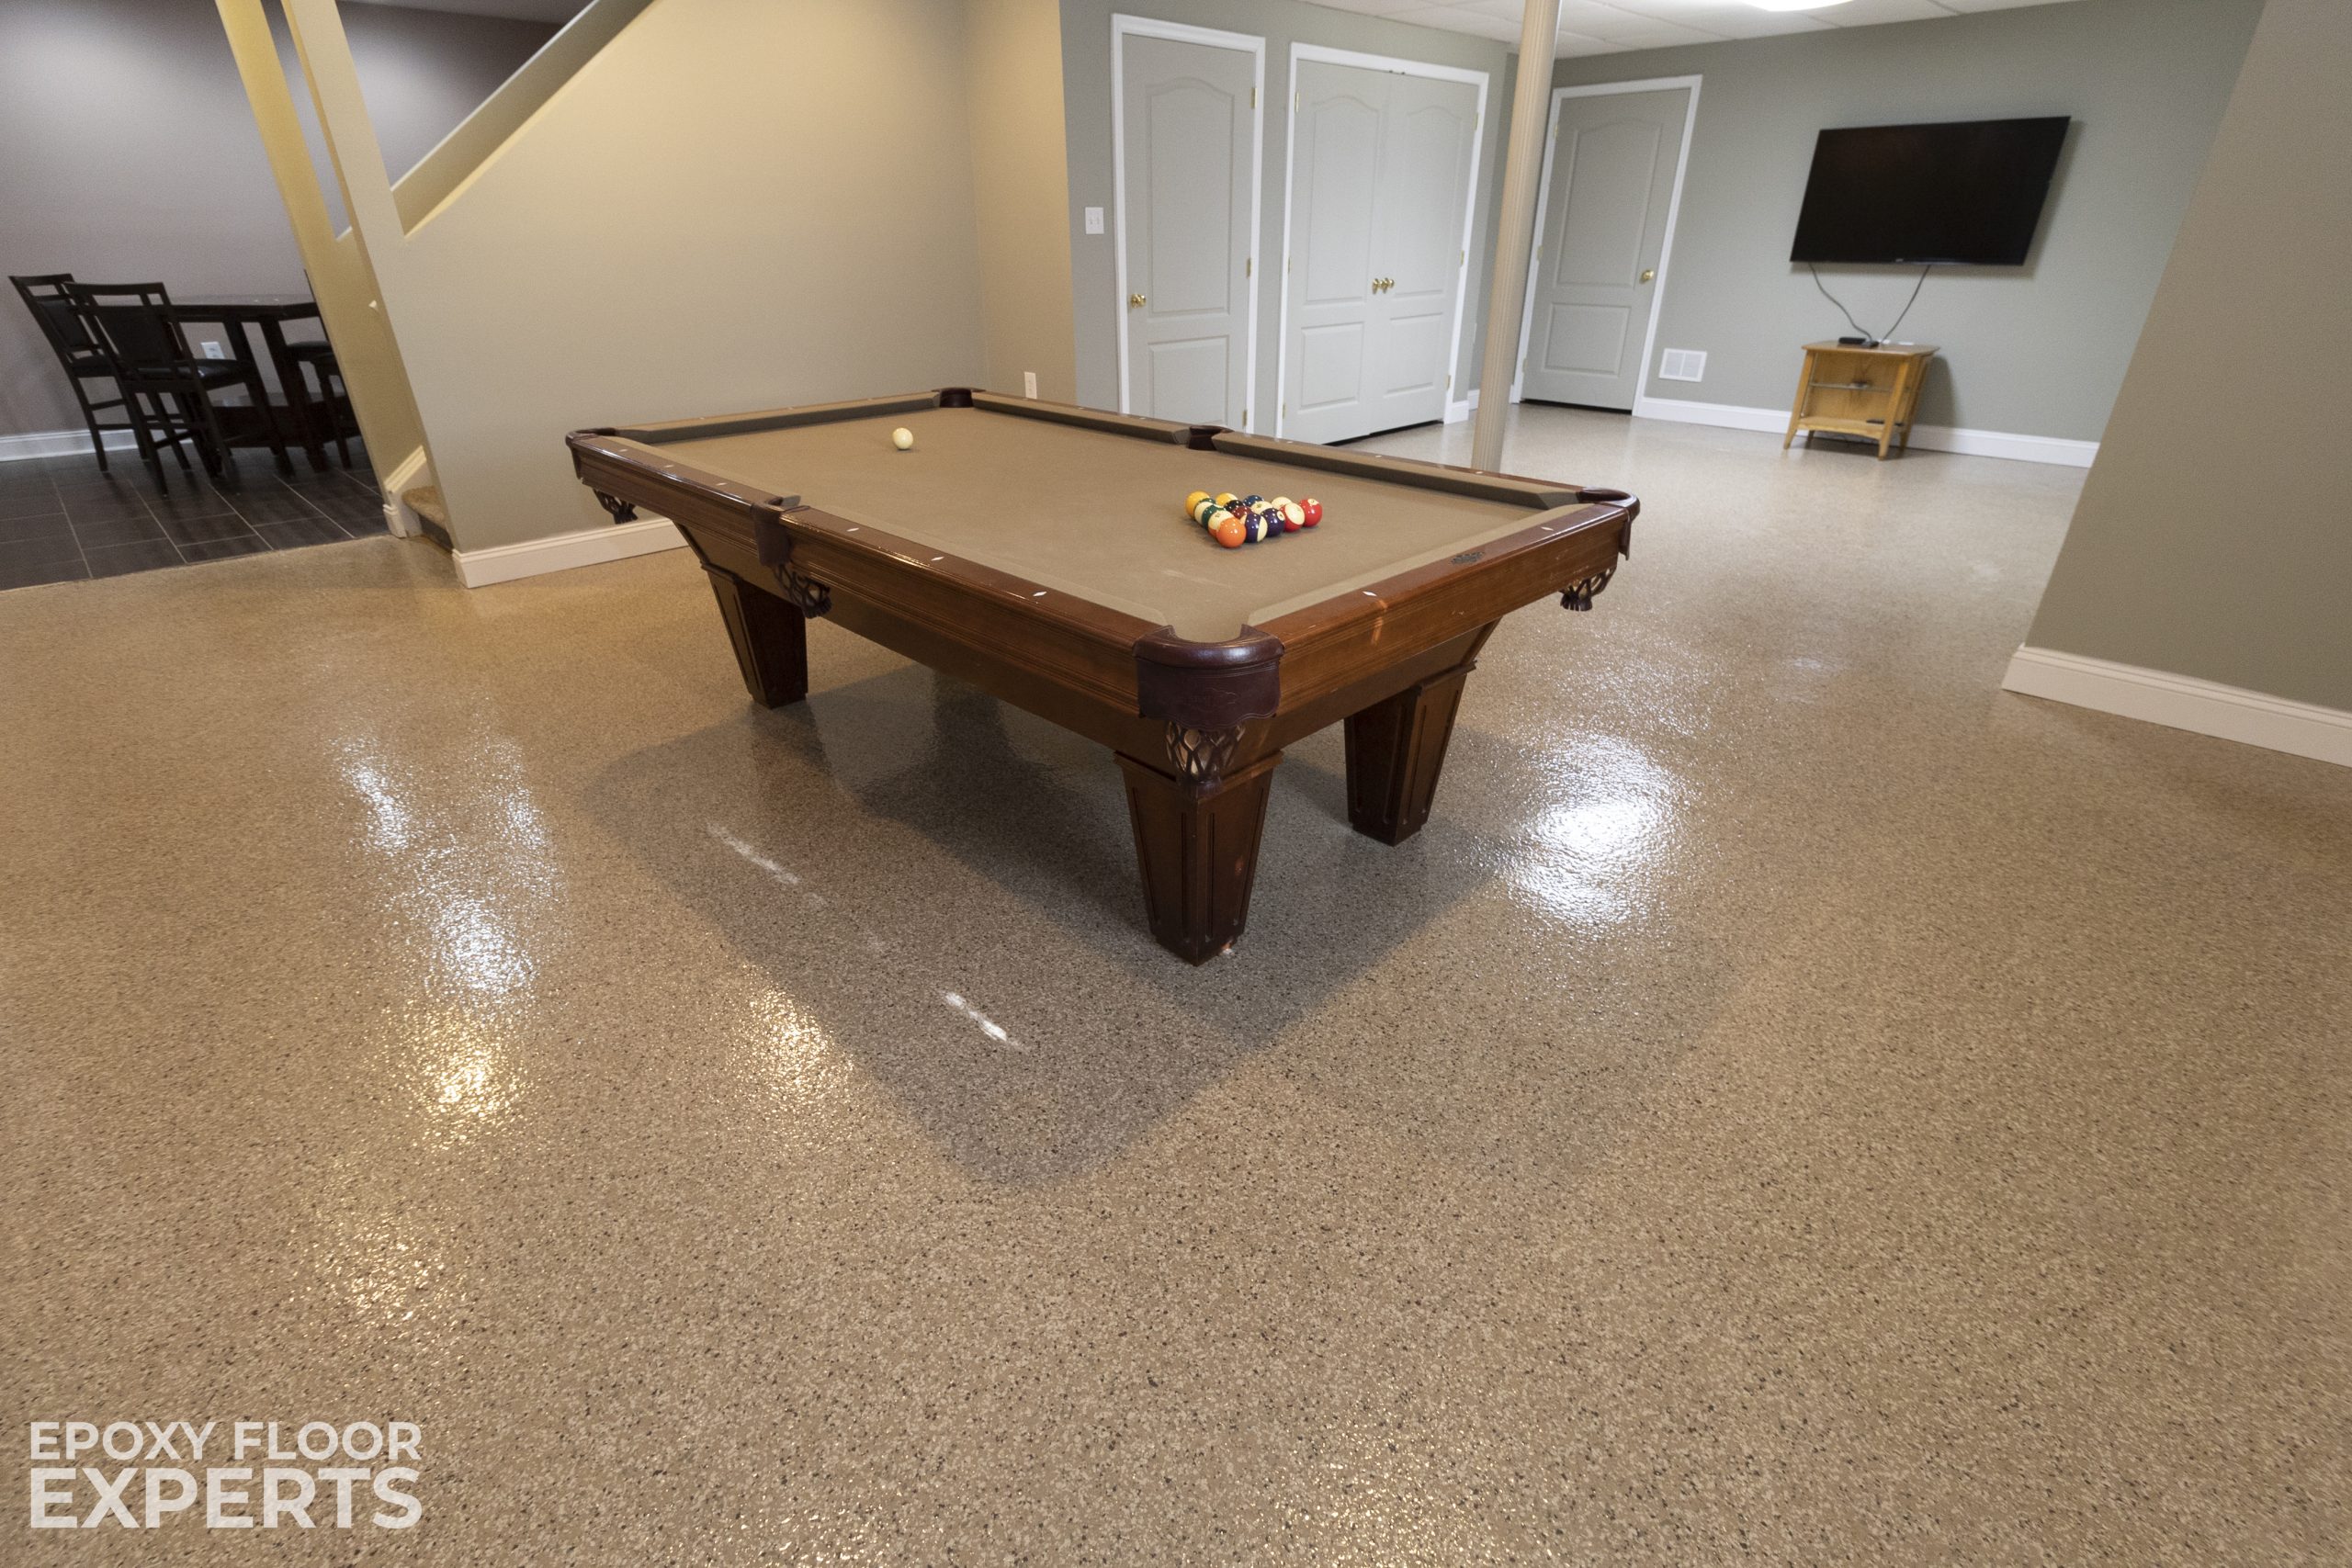 Pool table on durable epoxy flooring